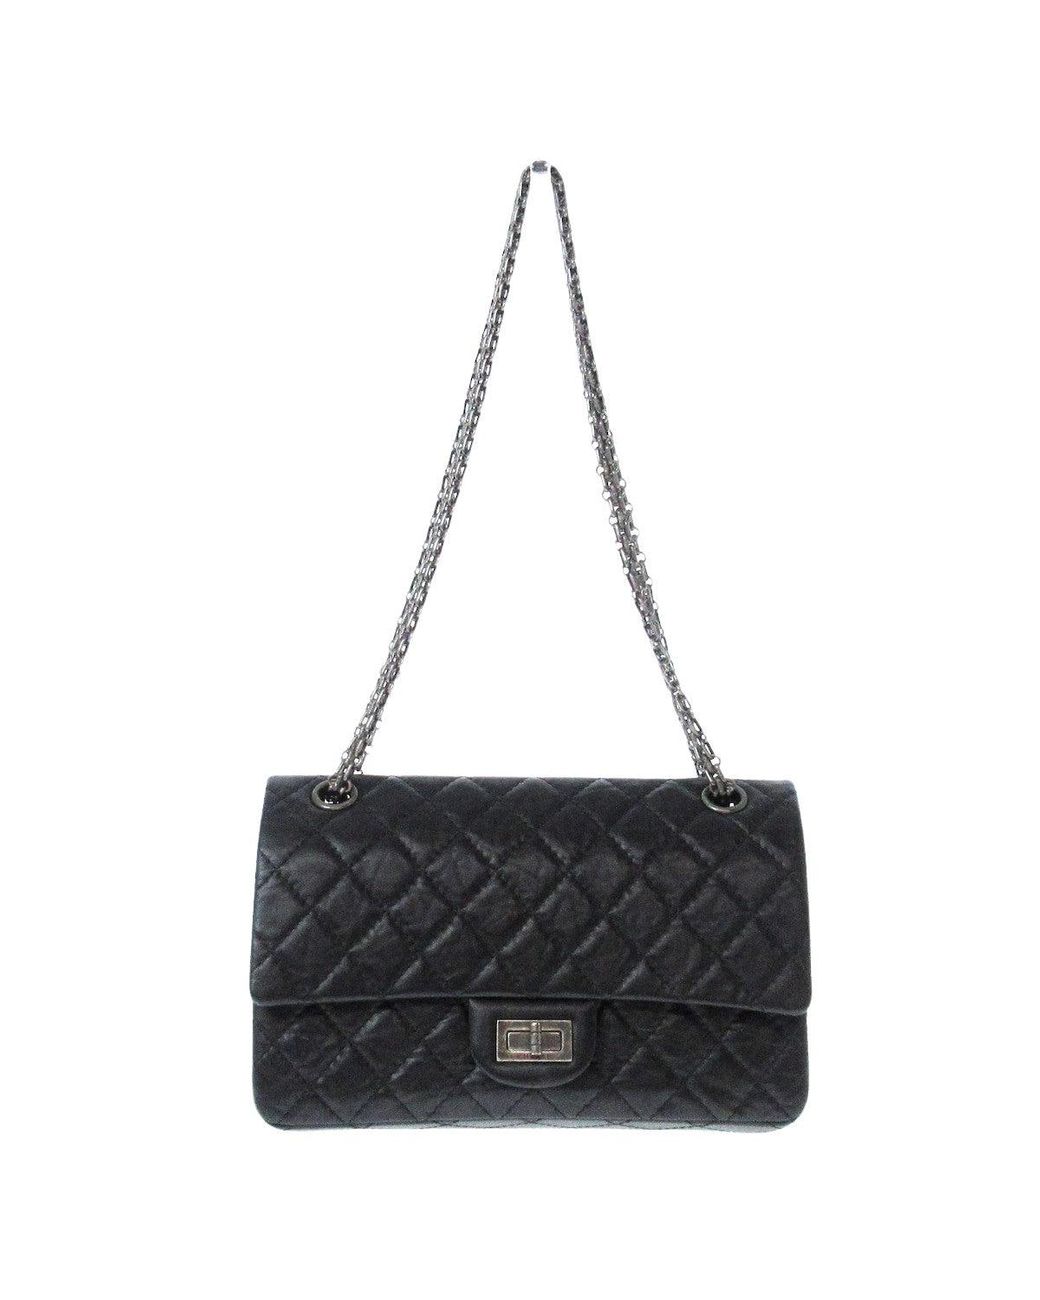 Chanel 2.55 Leather Shoulder Bag (pre-owned) in Black